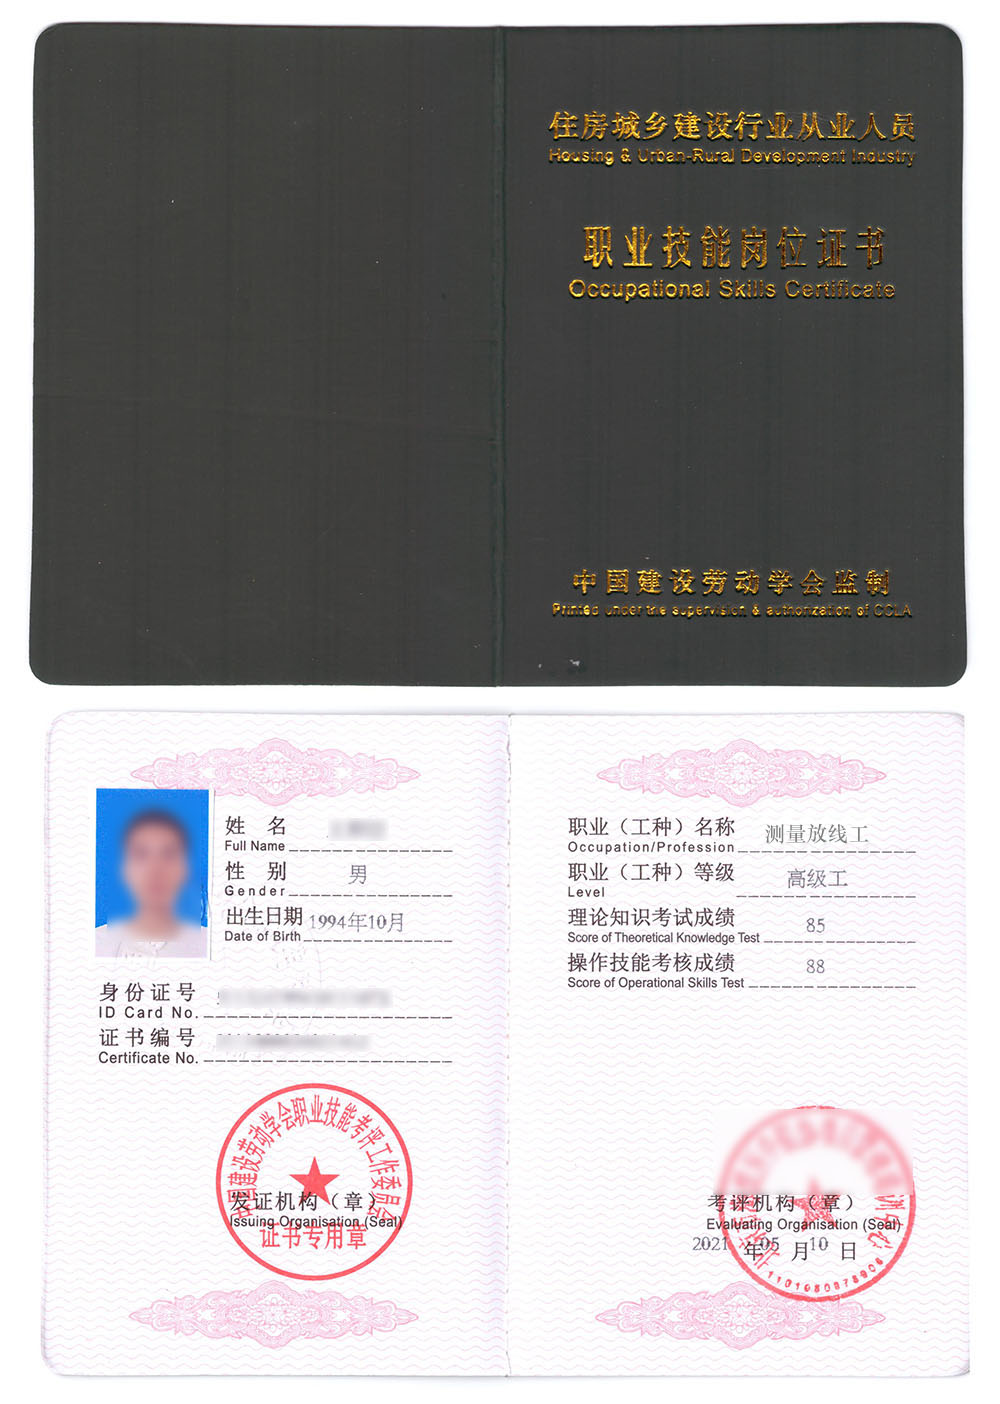 中国建设劳动学会 职业技能岗位证书 测量放线工证书样本